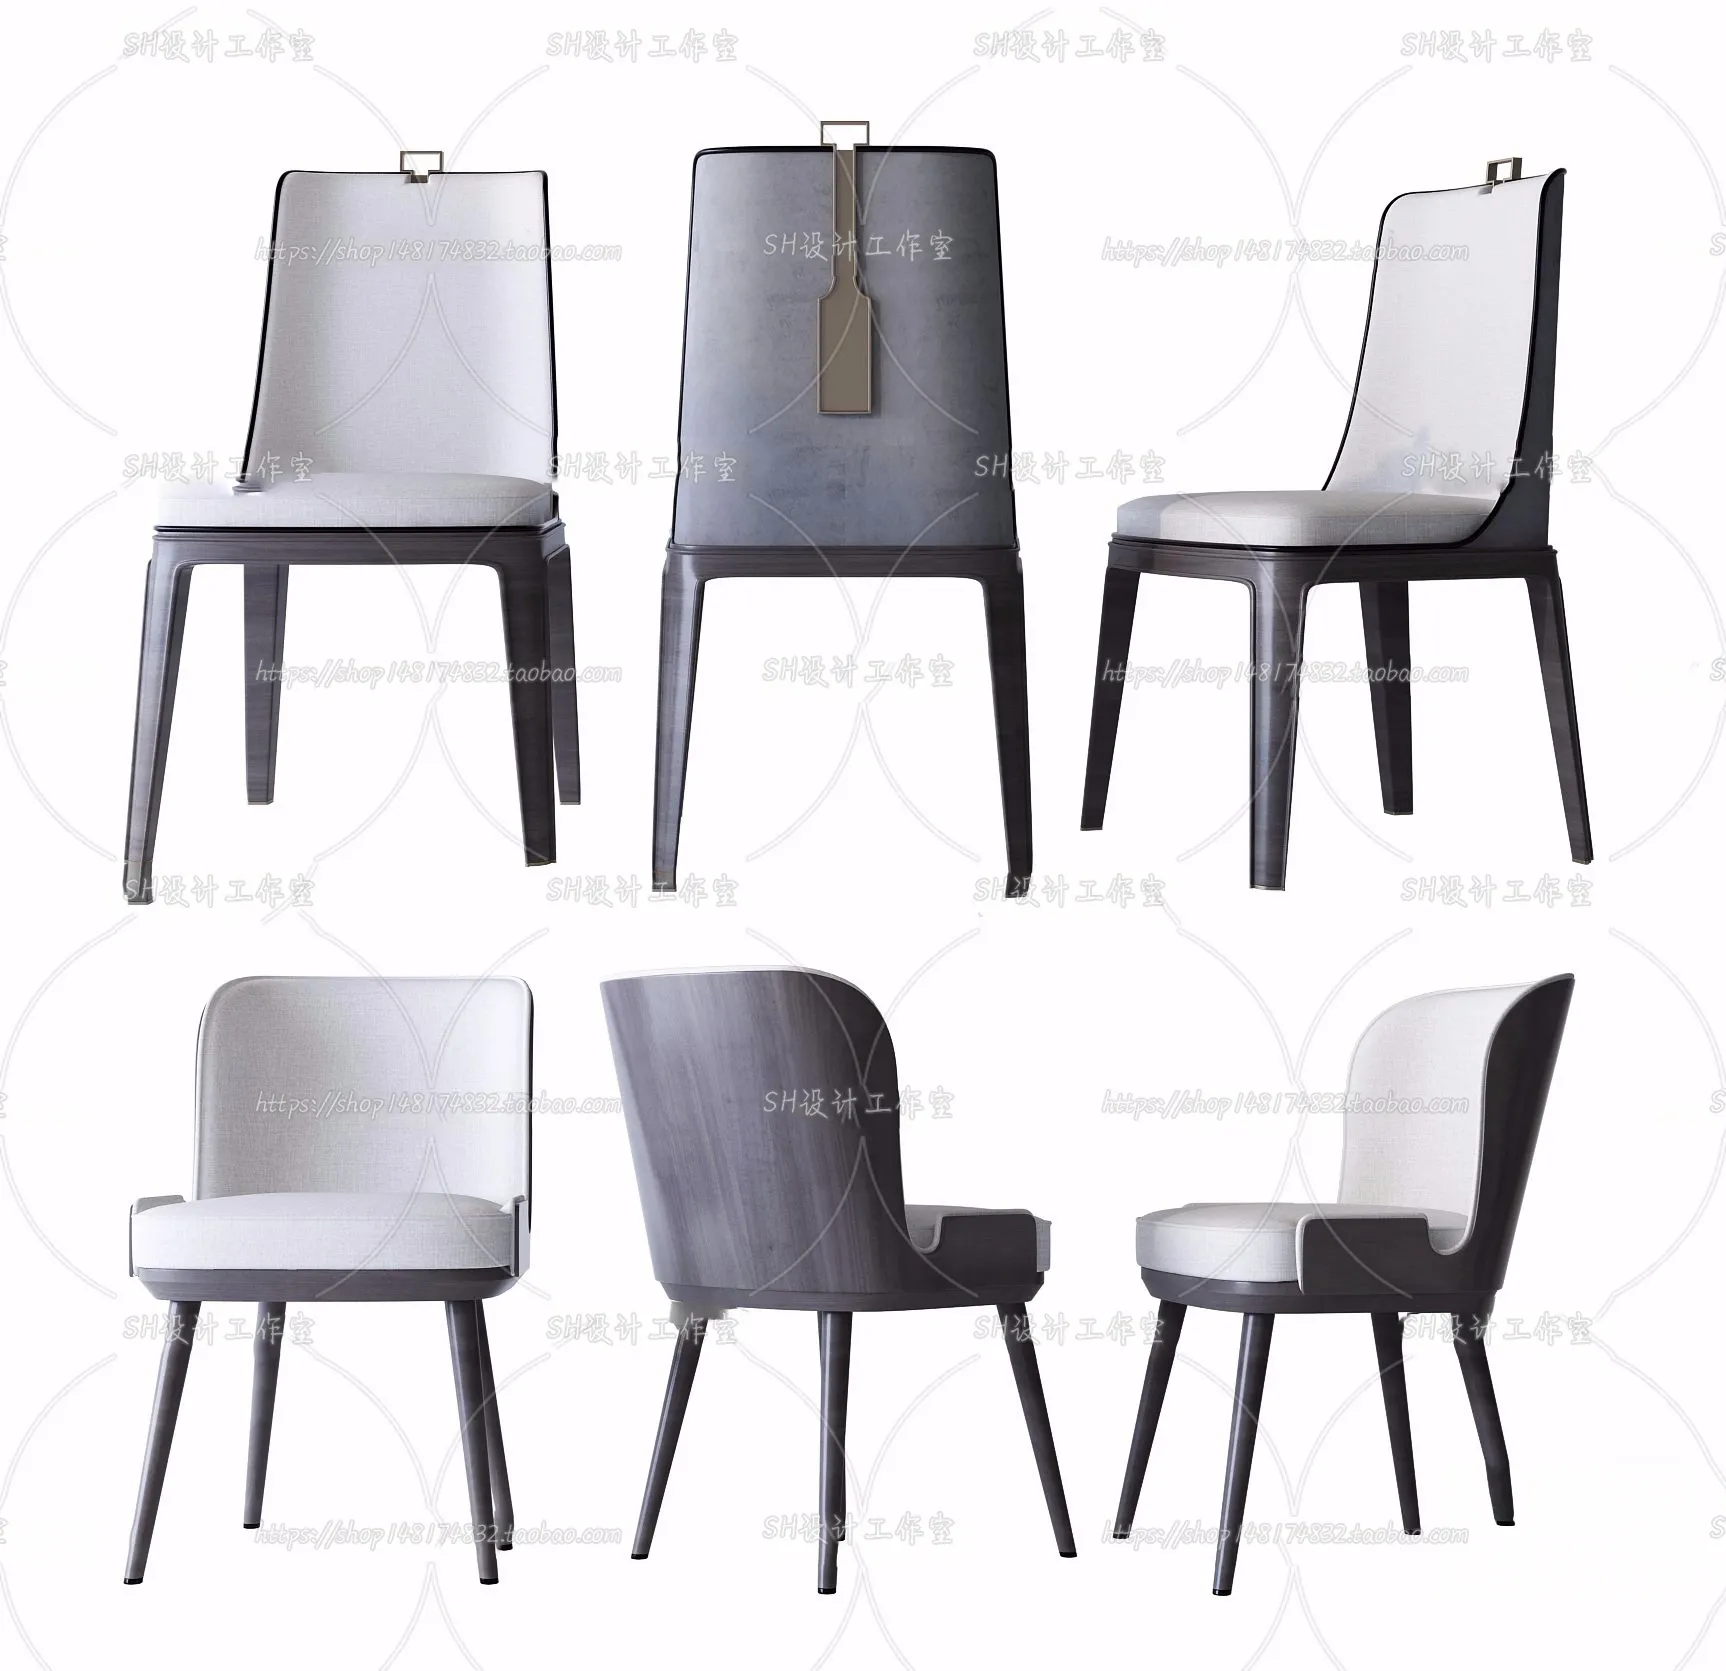 Chair – Single Chair 3D Models – 2031